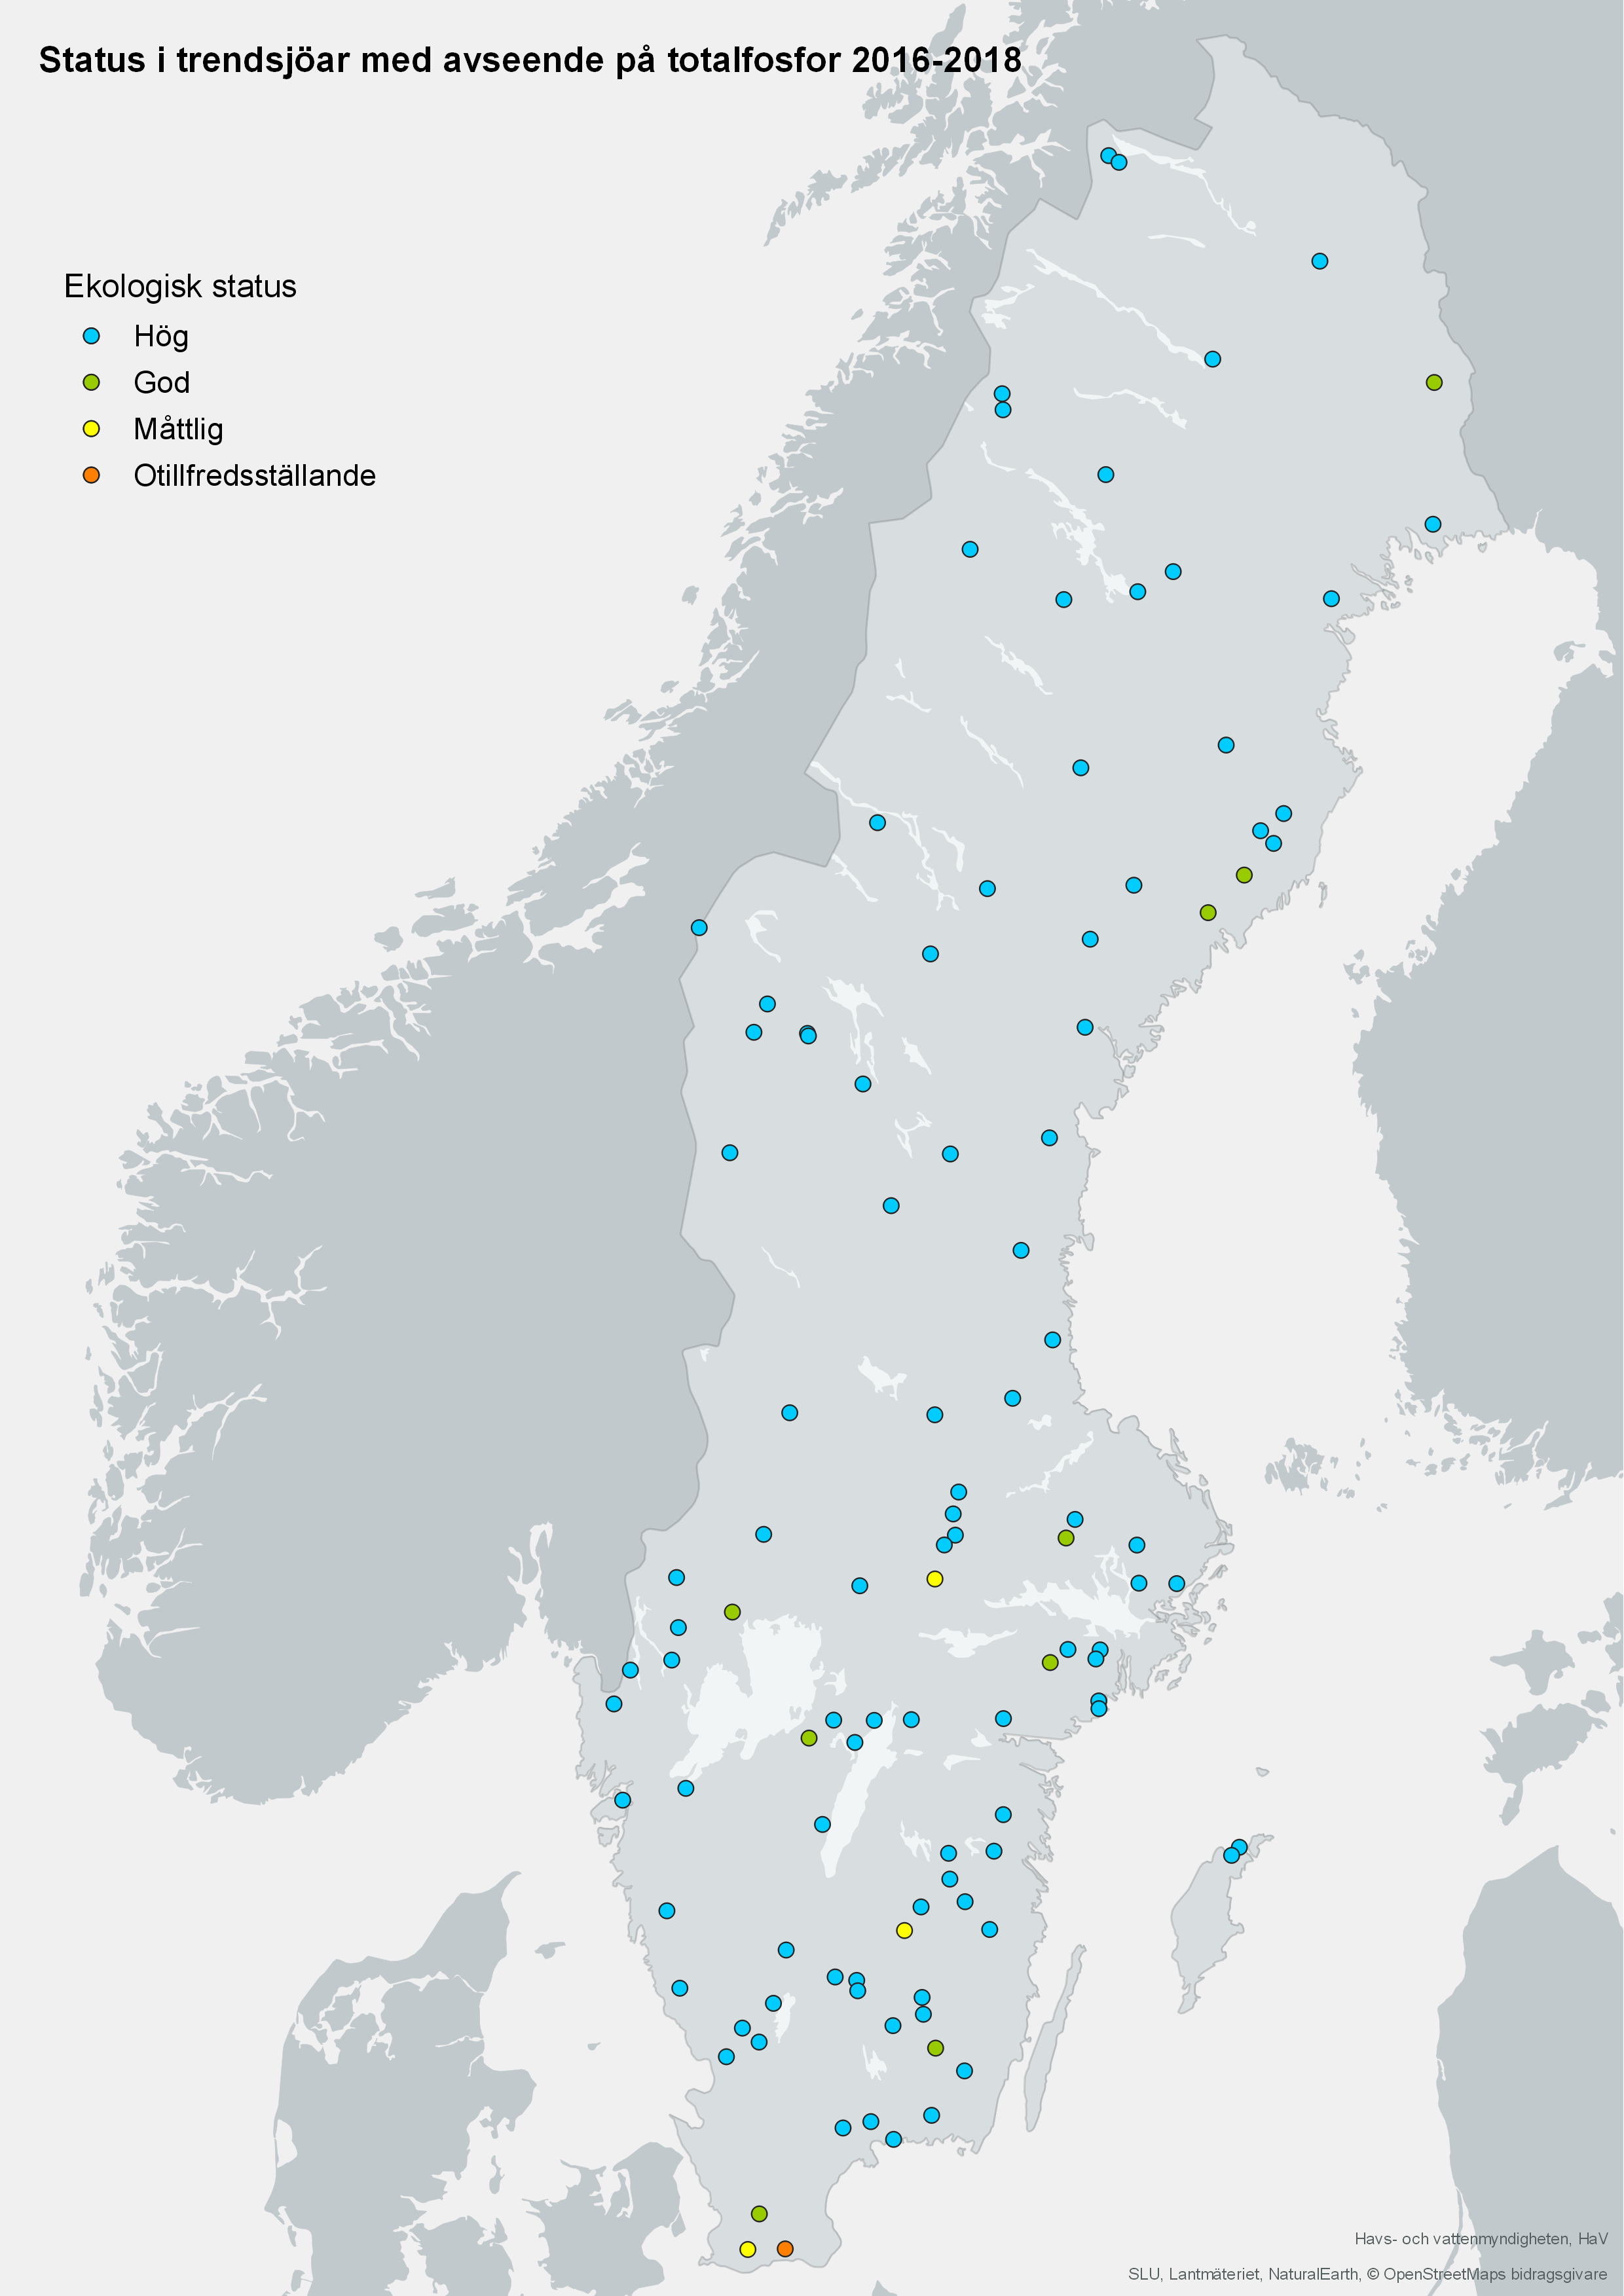 Trendsjöars status vad gäller totalfosfor år 2016-2018. Karta, illustration.